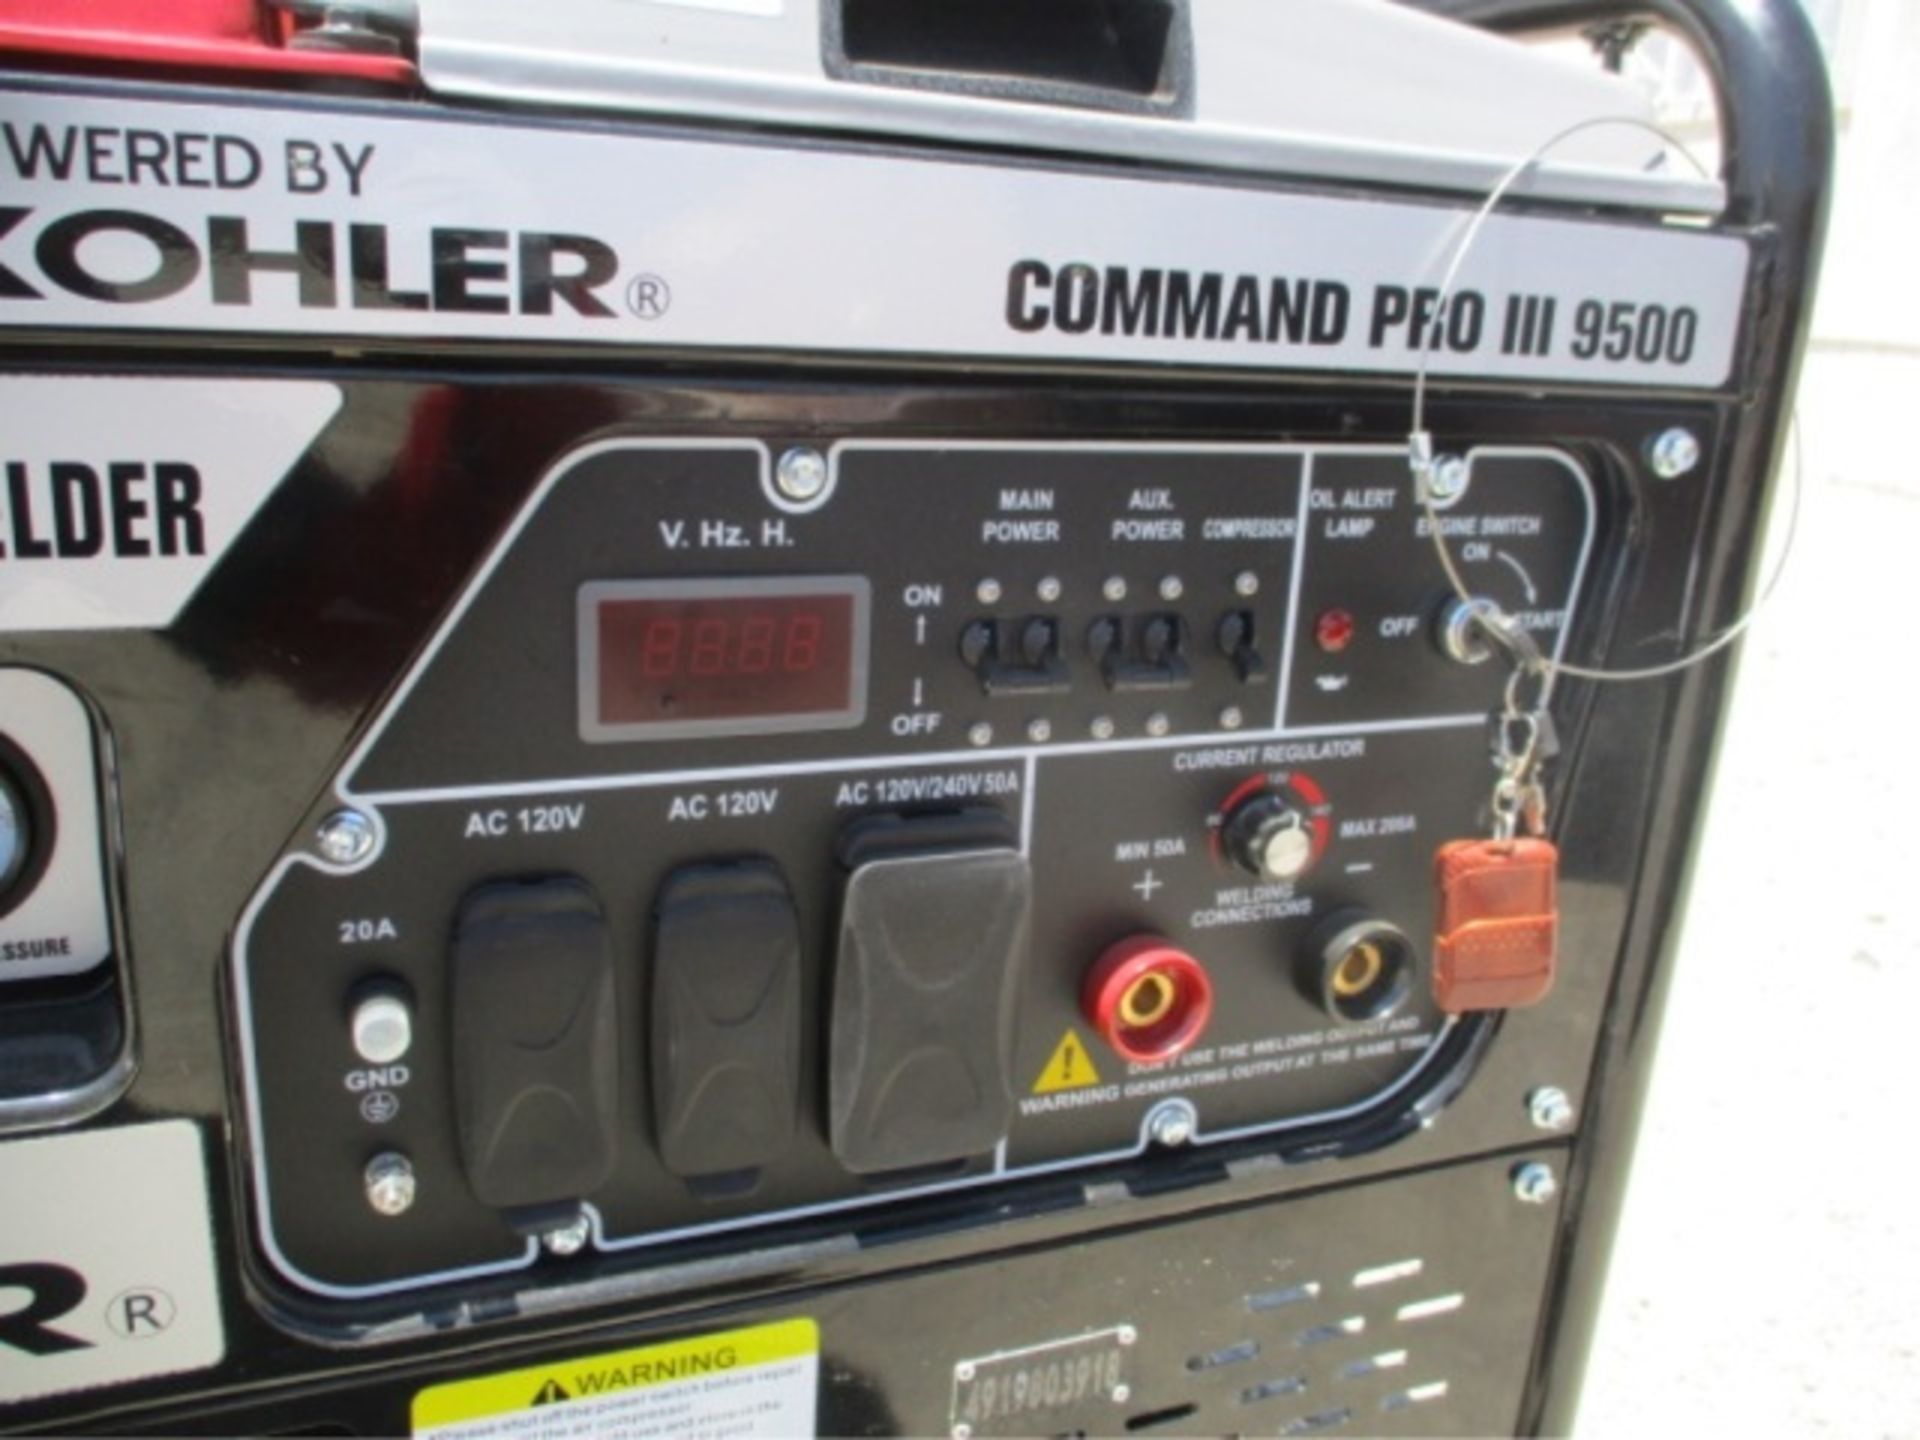 Kohler Command Pro III 9500 Generator Compressor, Welder, Gas Powered, S/N: 4919803918 - Image 13 of 28